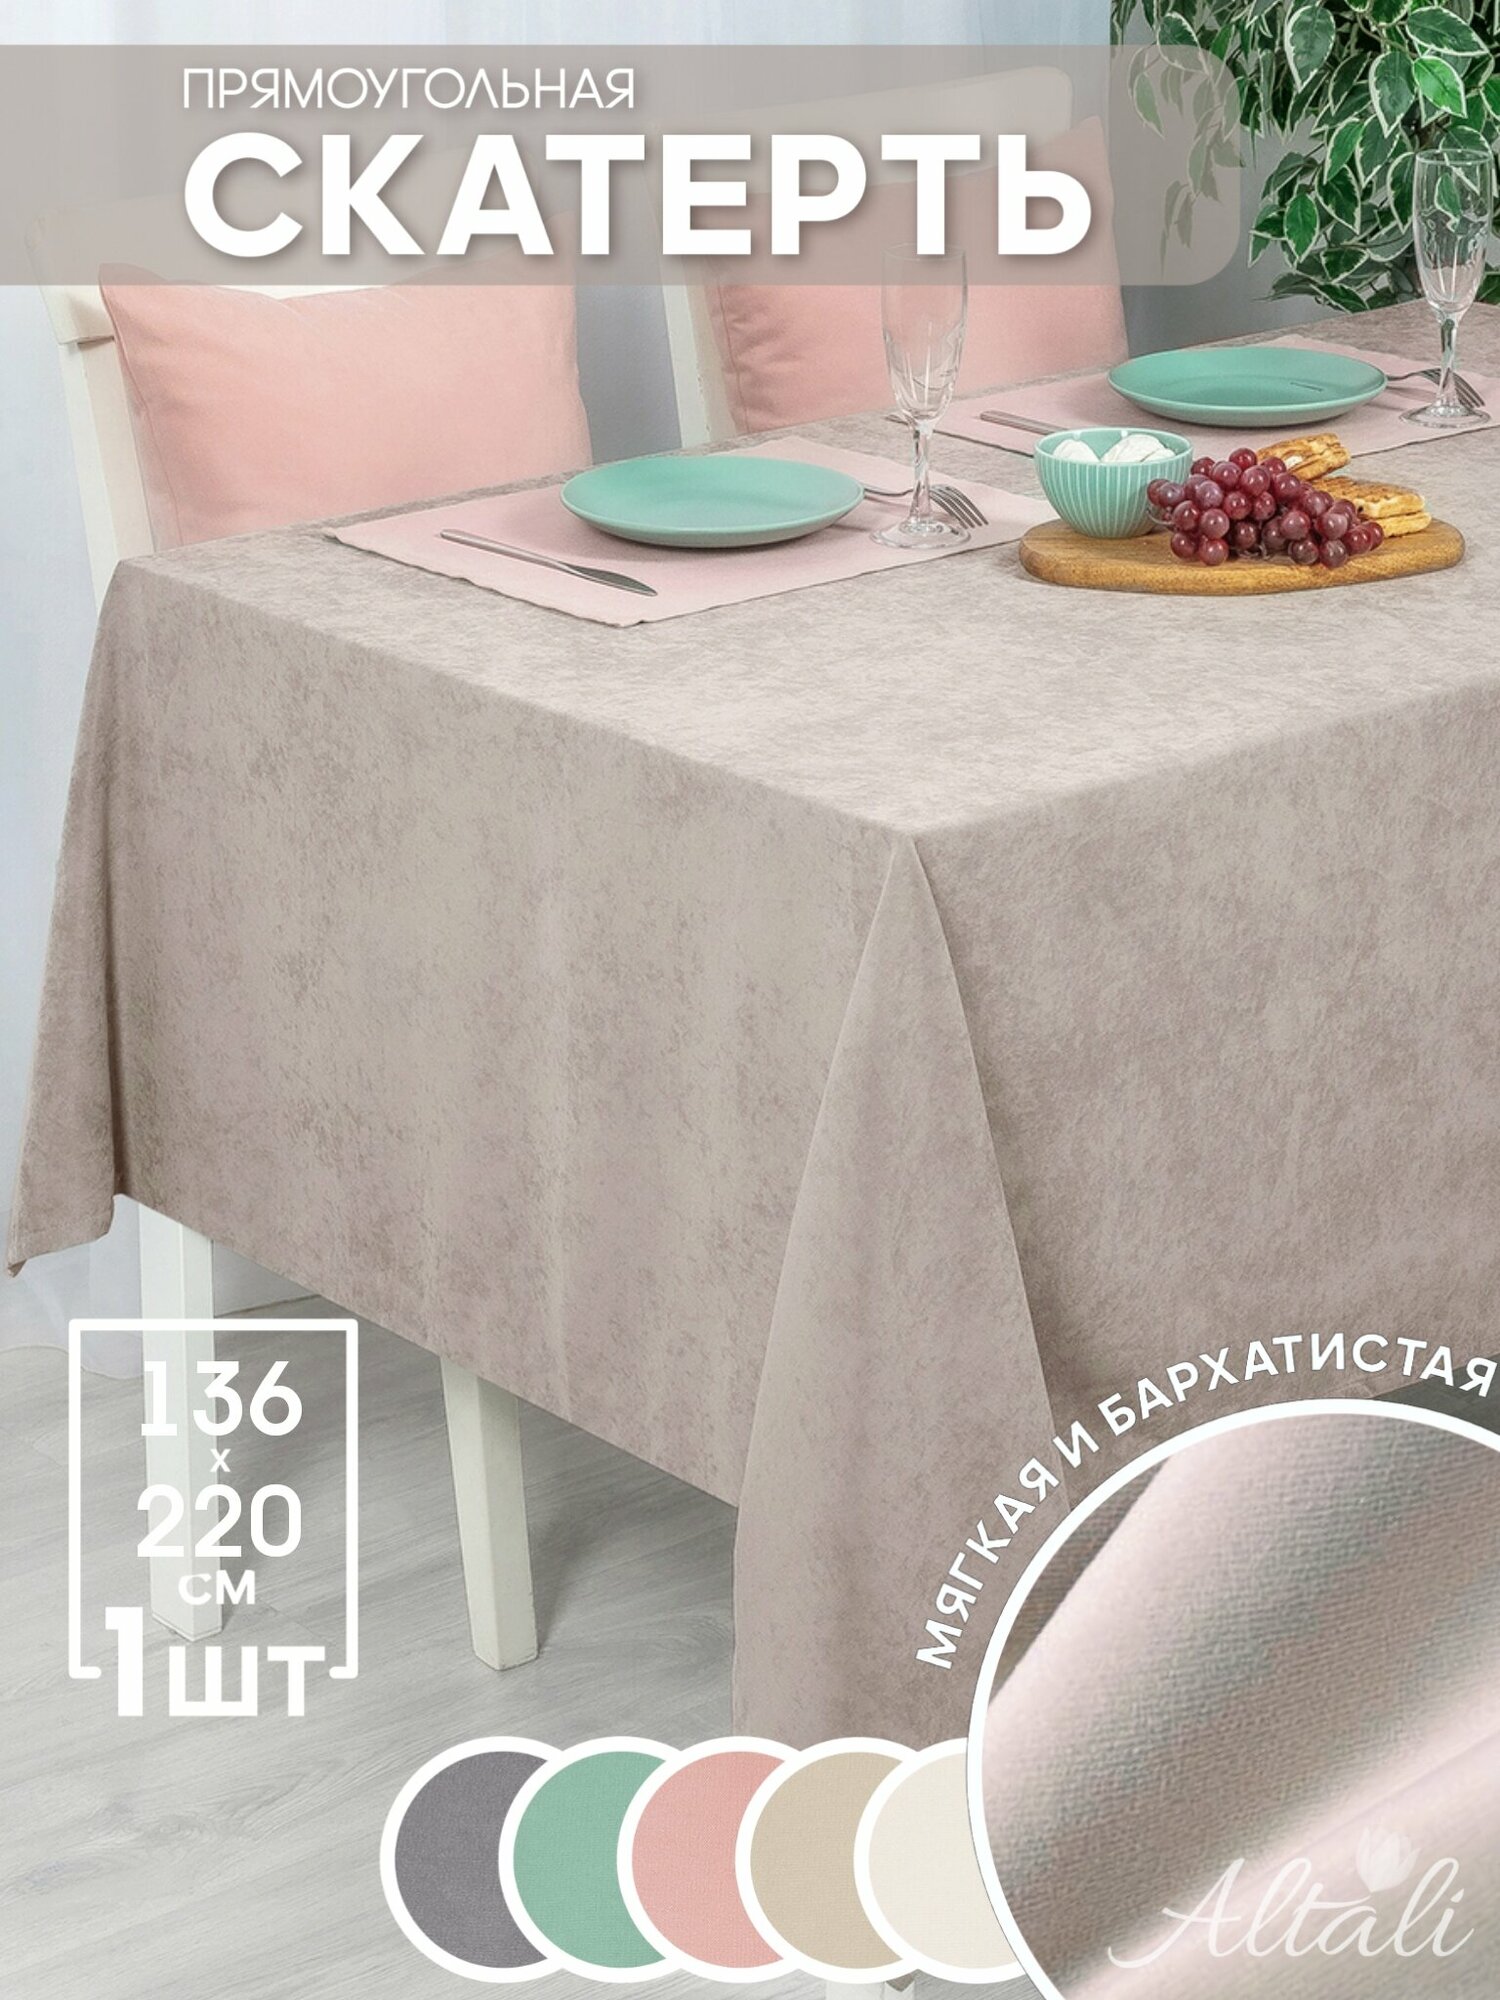 Скатерть кухонная прямоугольная на стол 136x220 Джинджер / ткань велюр / для кухни, дома, дачи /Altali